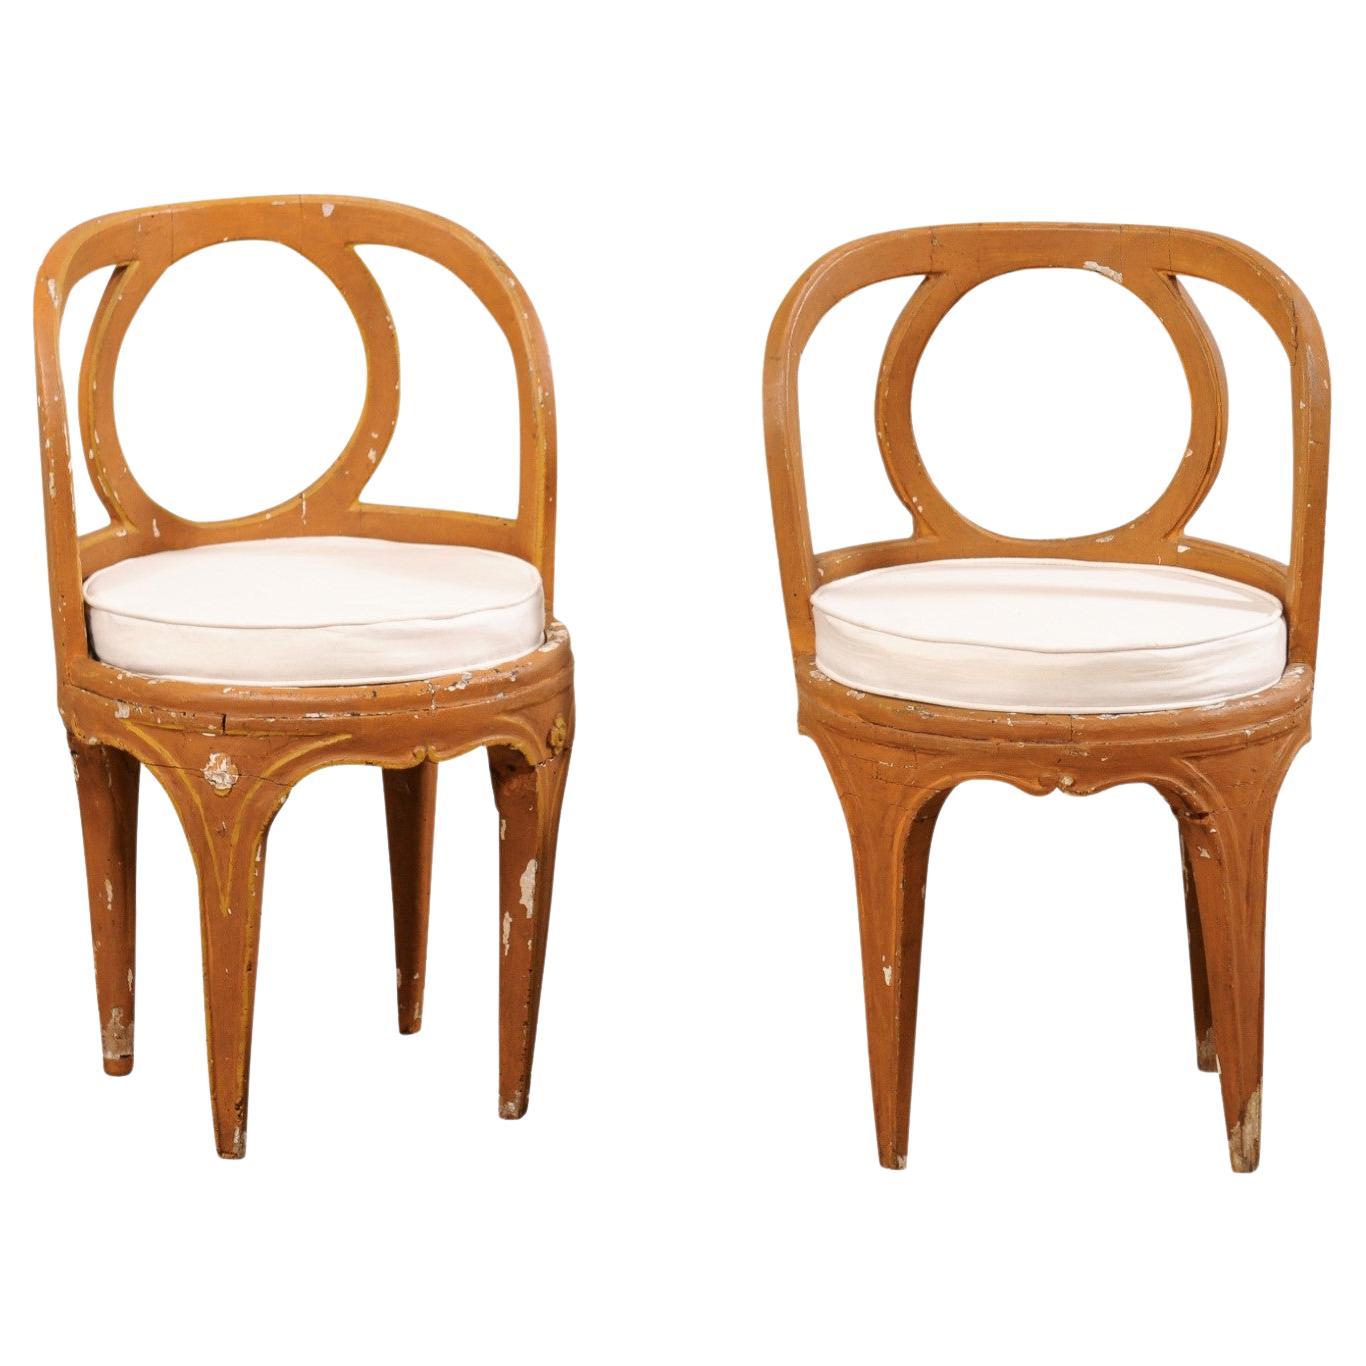 Paar italienische venezianische Stühle aus dem 18. Jahrhundert mit neuen, abnehmbaren Sitzkissen